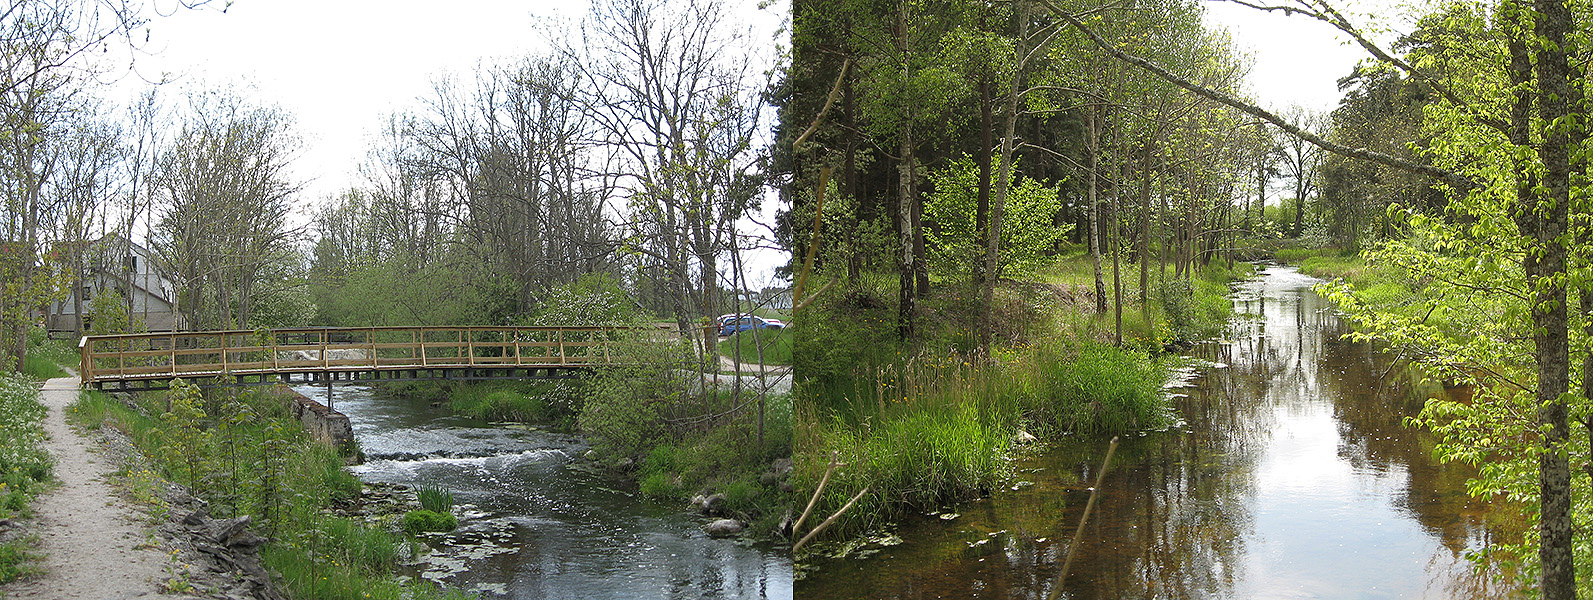 Till vänster: 2008 byggdes gångbron vid kvarndammen i Dalhem. Till höger: Vy av ån längs med vandringsleden. Foto: 2008